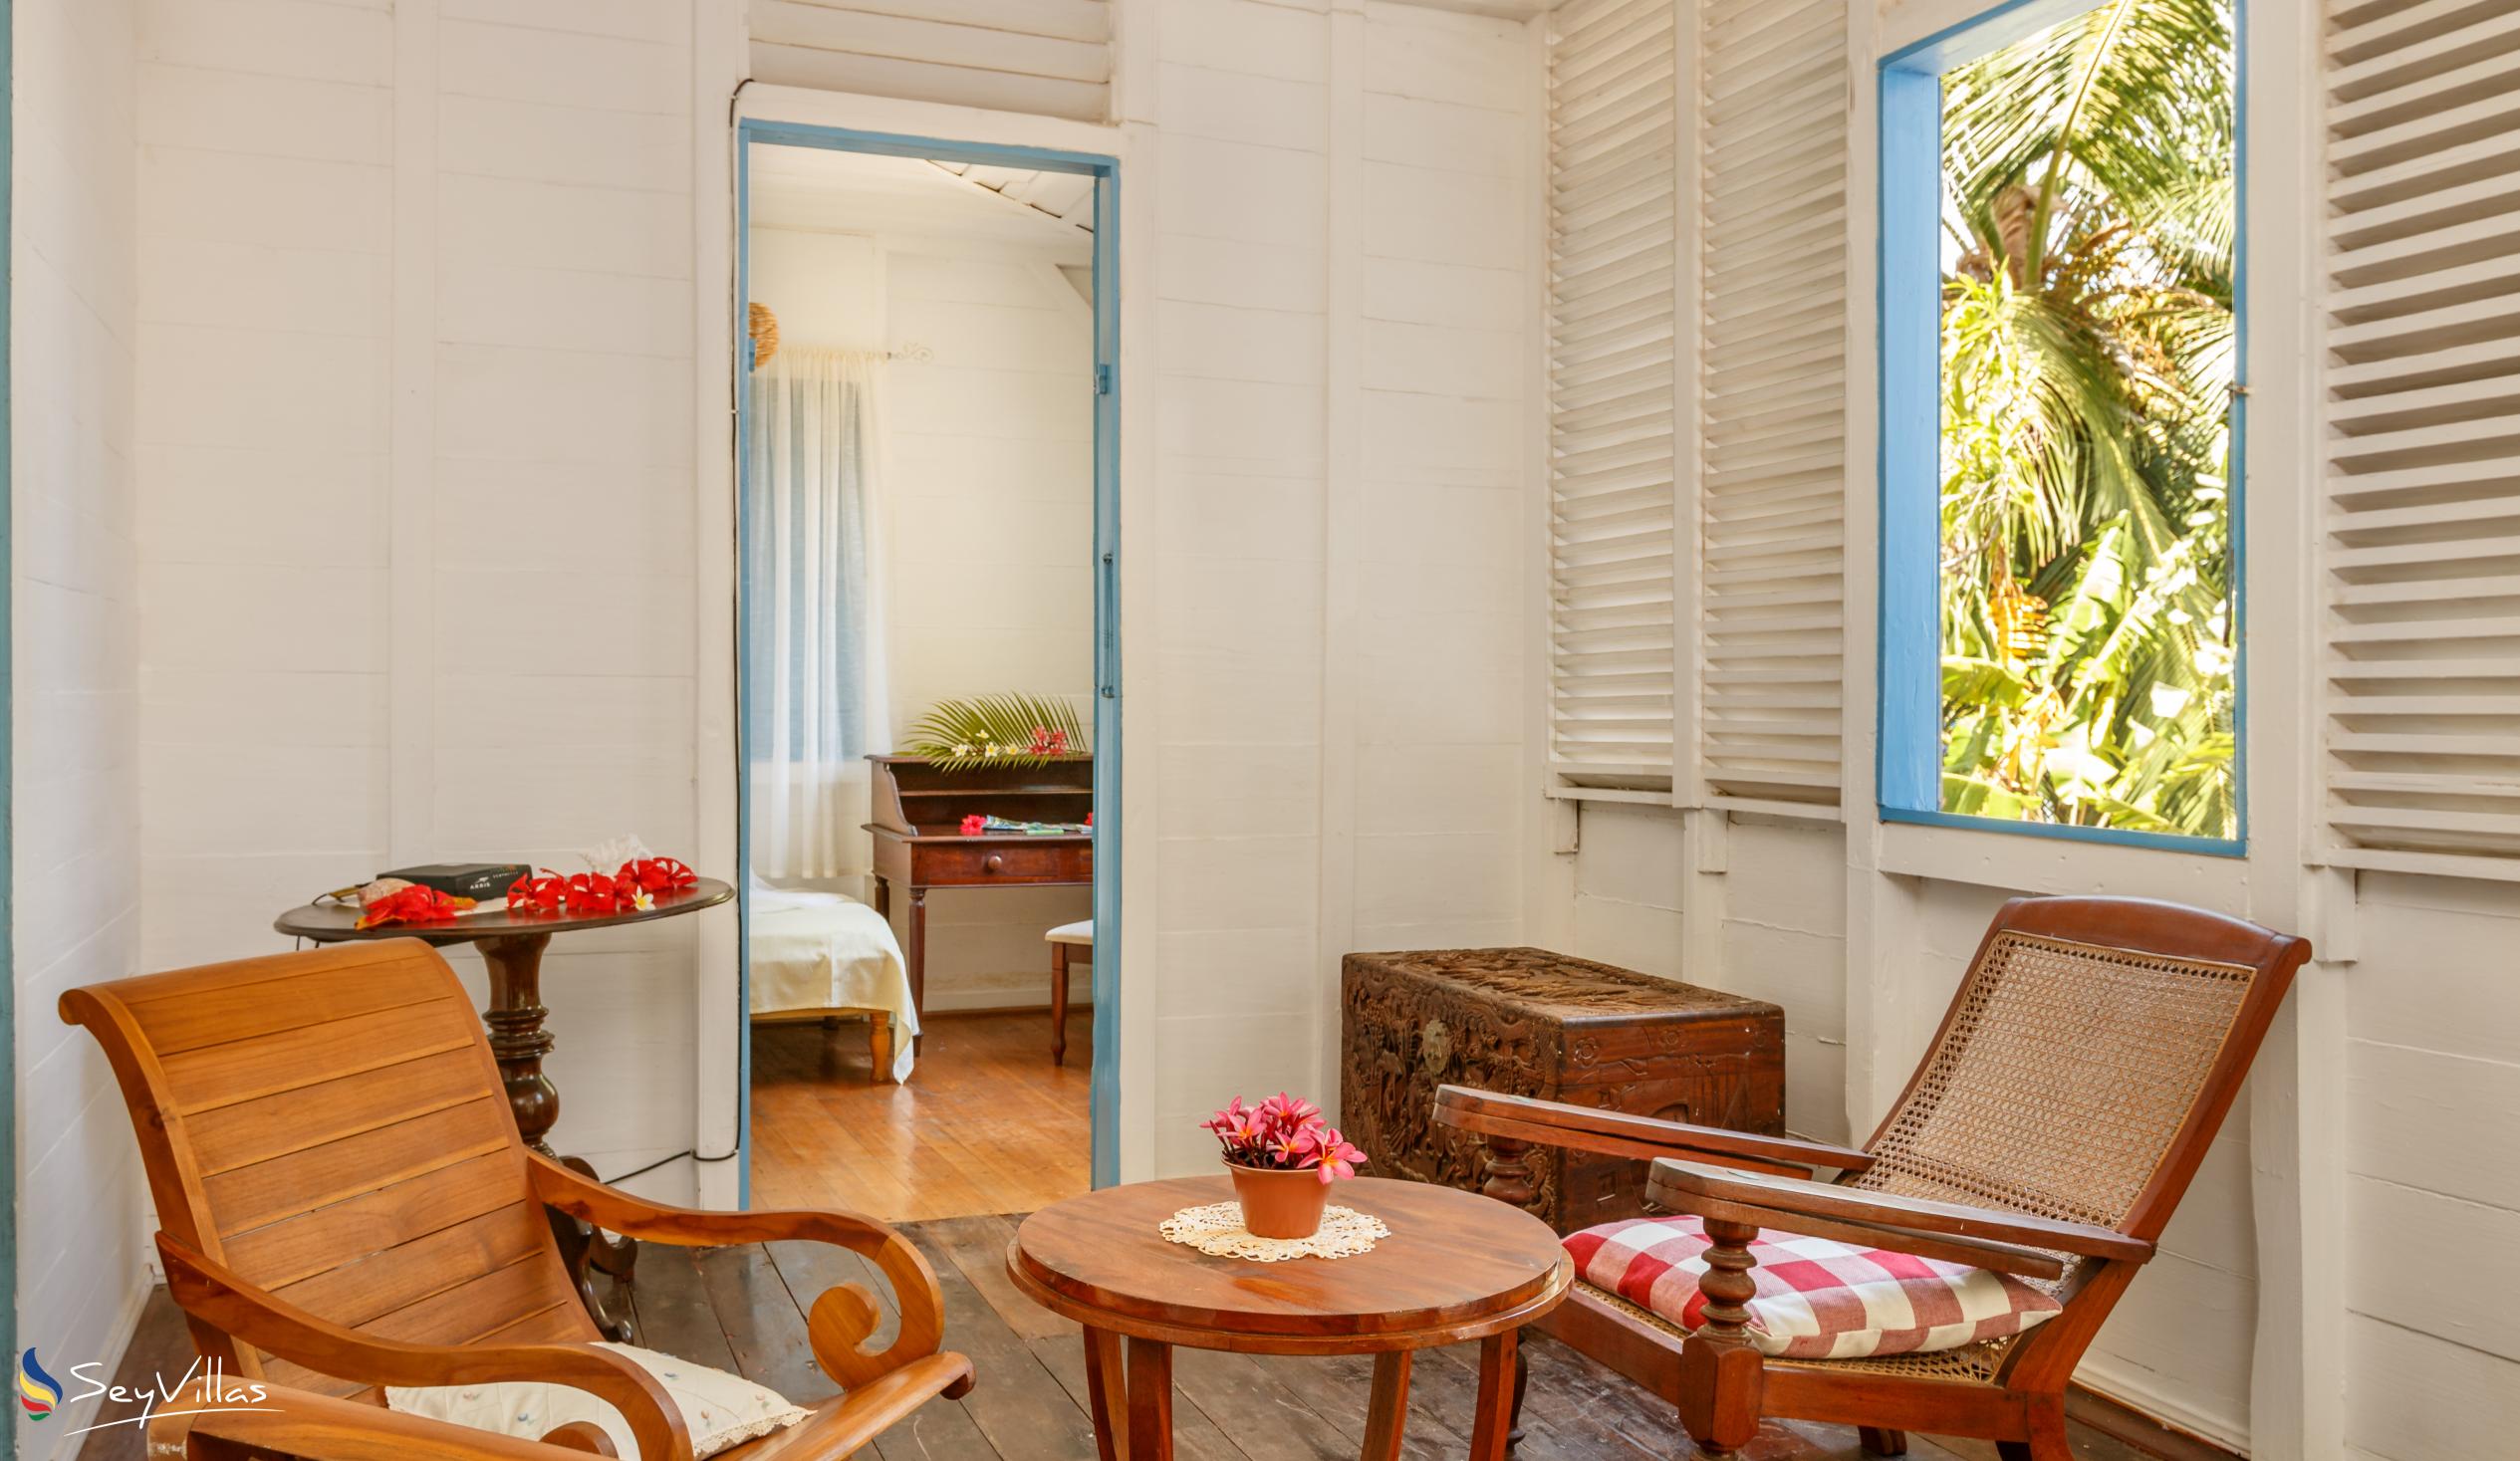 Foto 51: The Beach House (Chateau Martha) - Maison de vacances avec 2 chambres à coucher - Mahé (Seychelles)